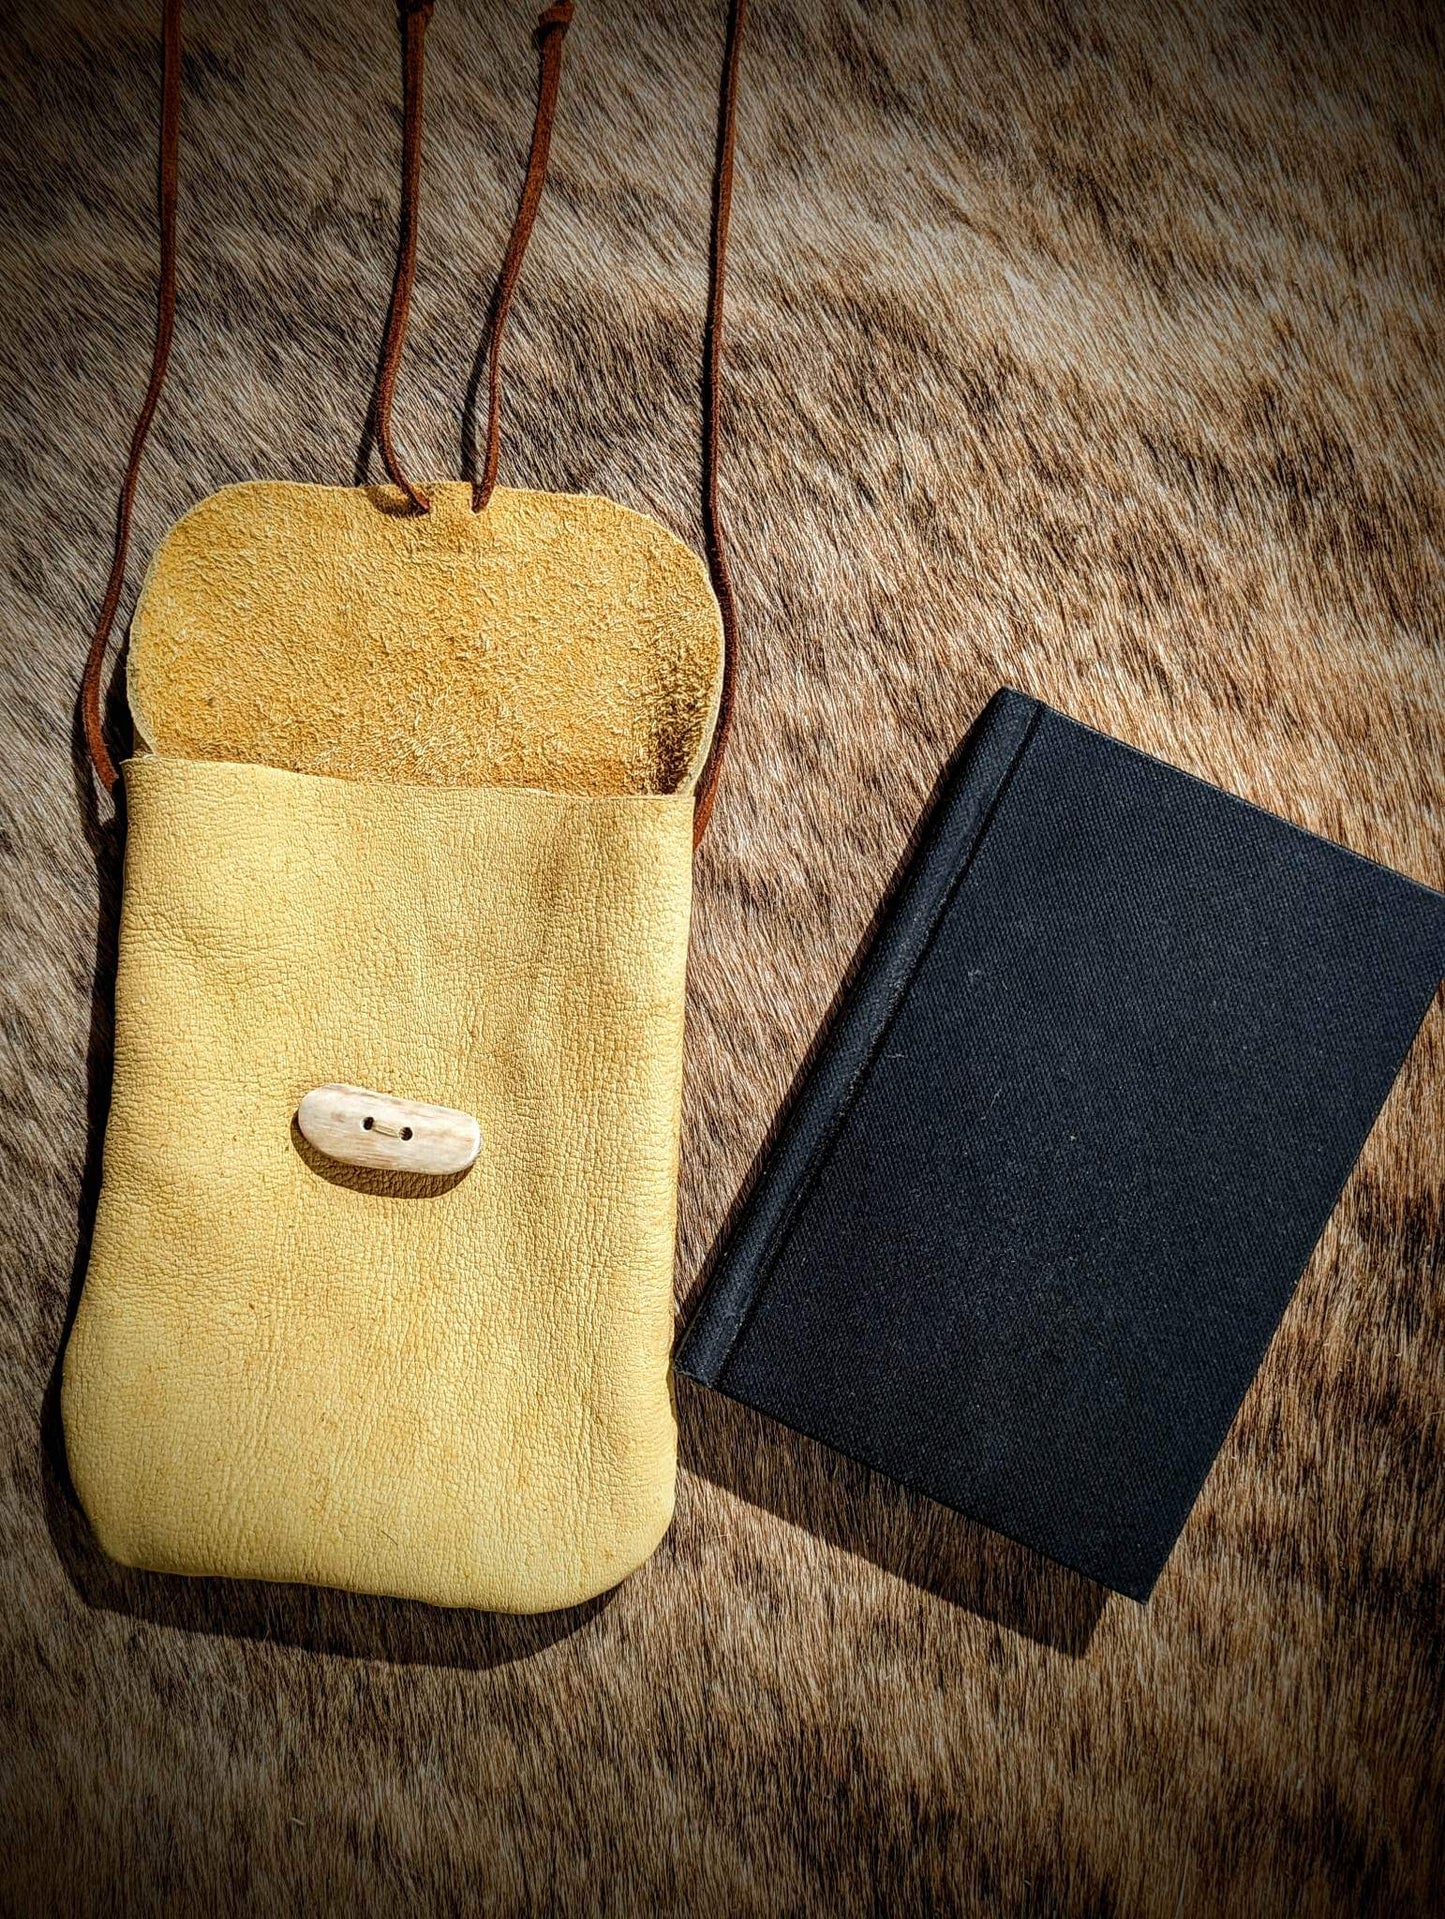 Elk Leather Bag | Foraging Bag | Field Note Satchel